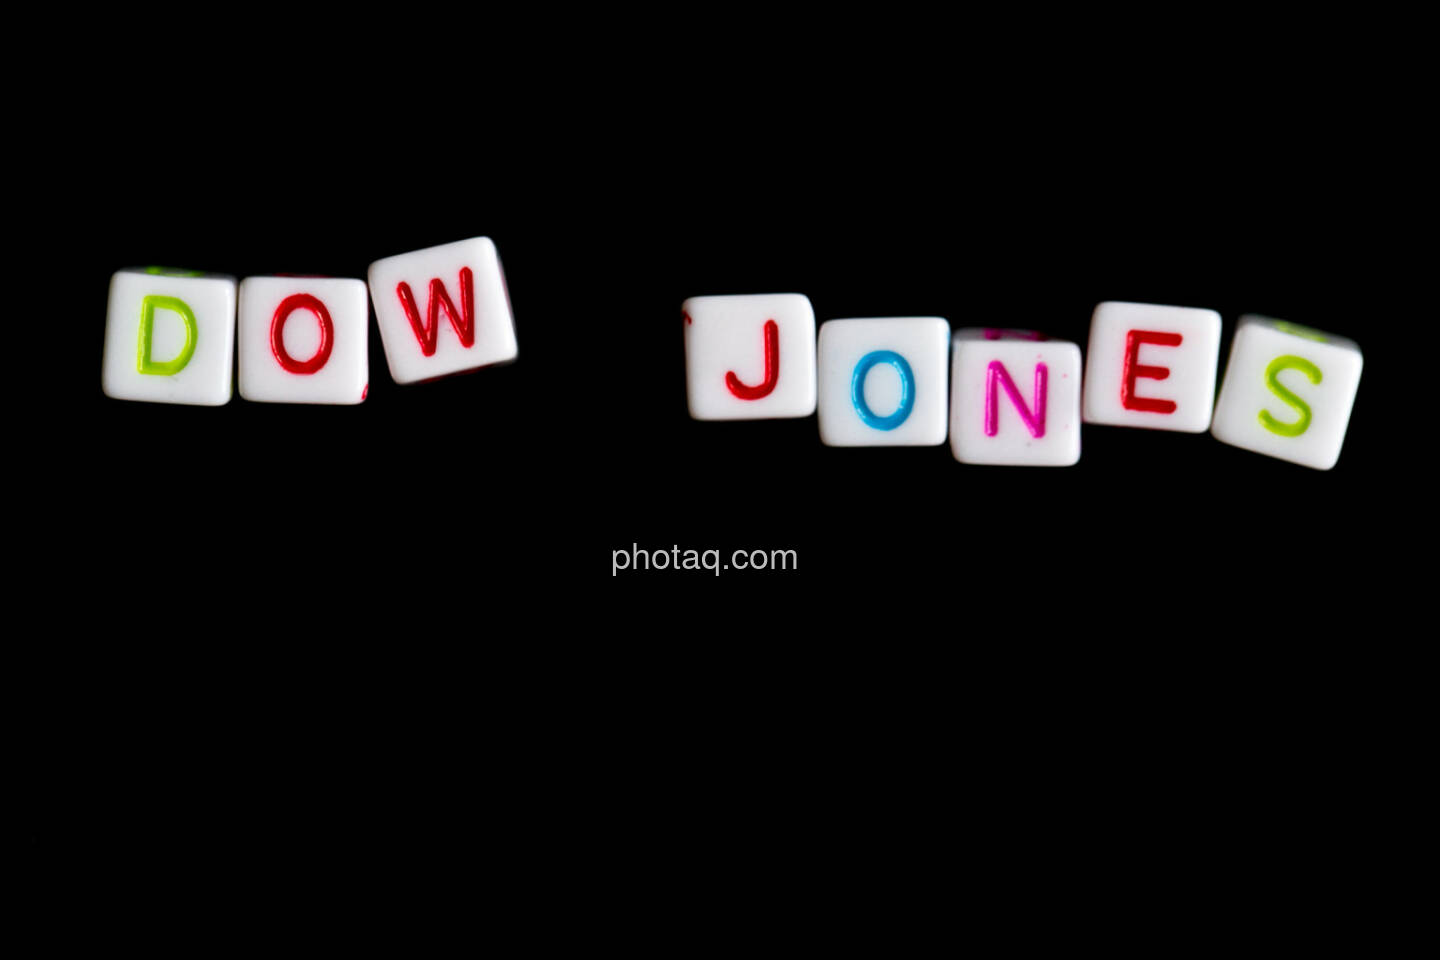 DOW Jones